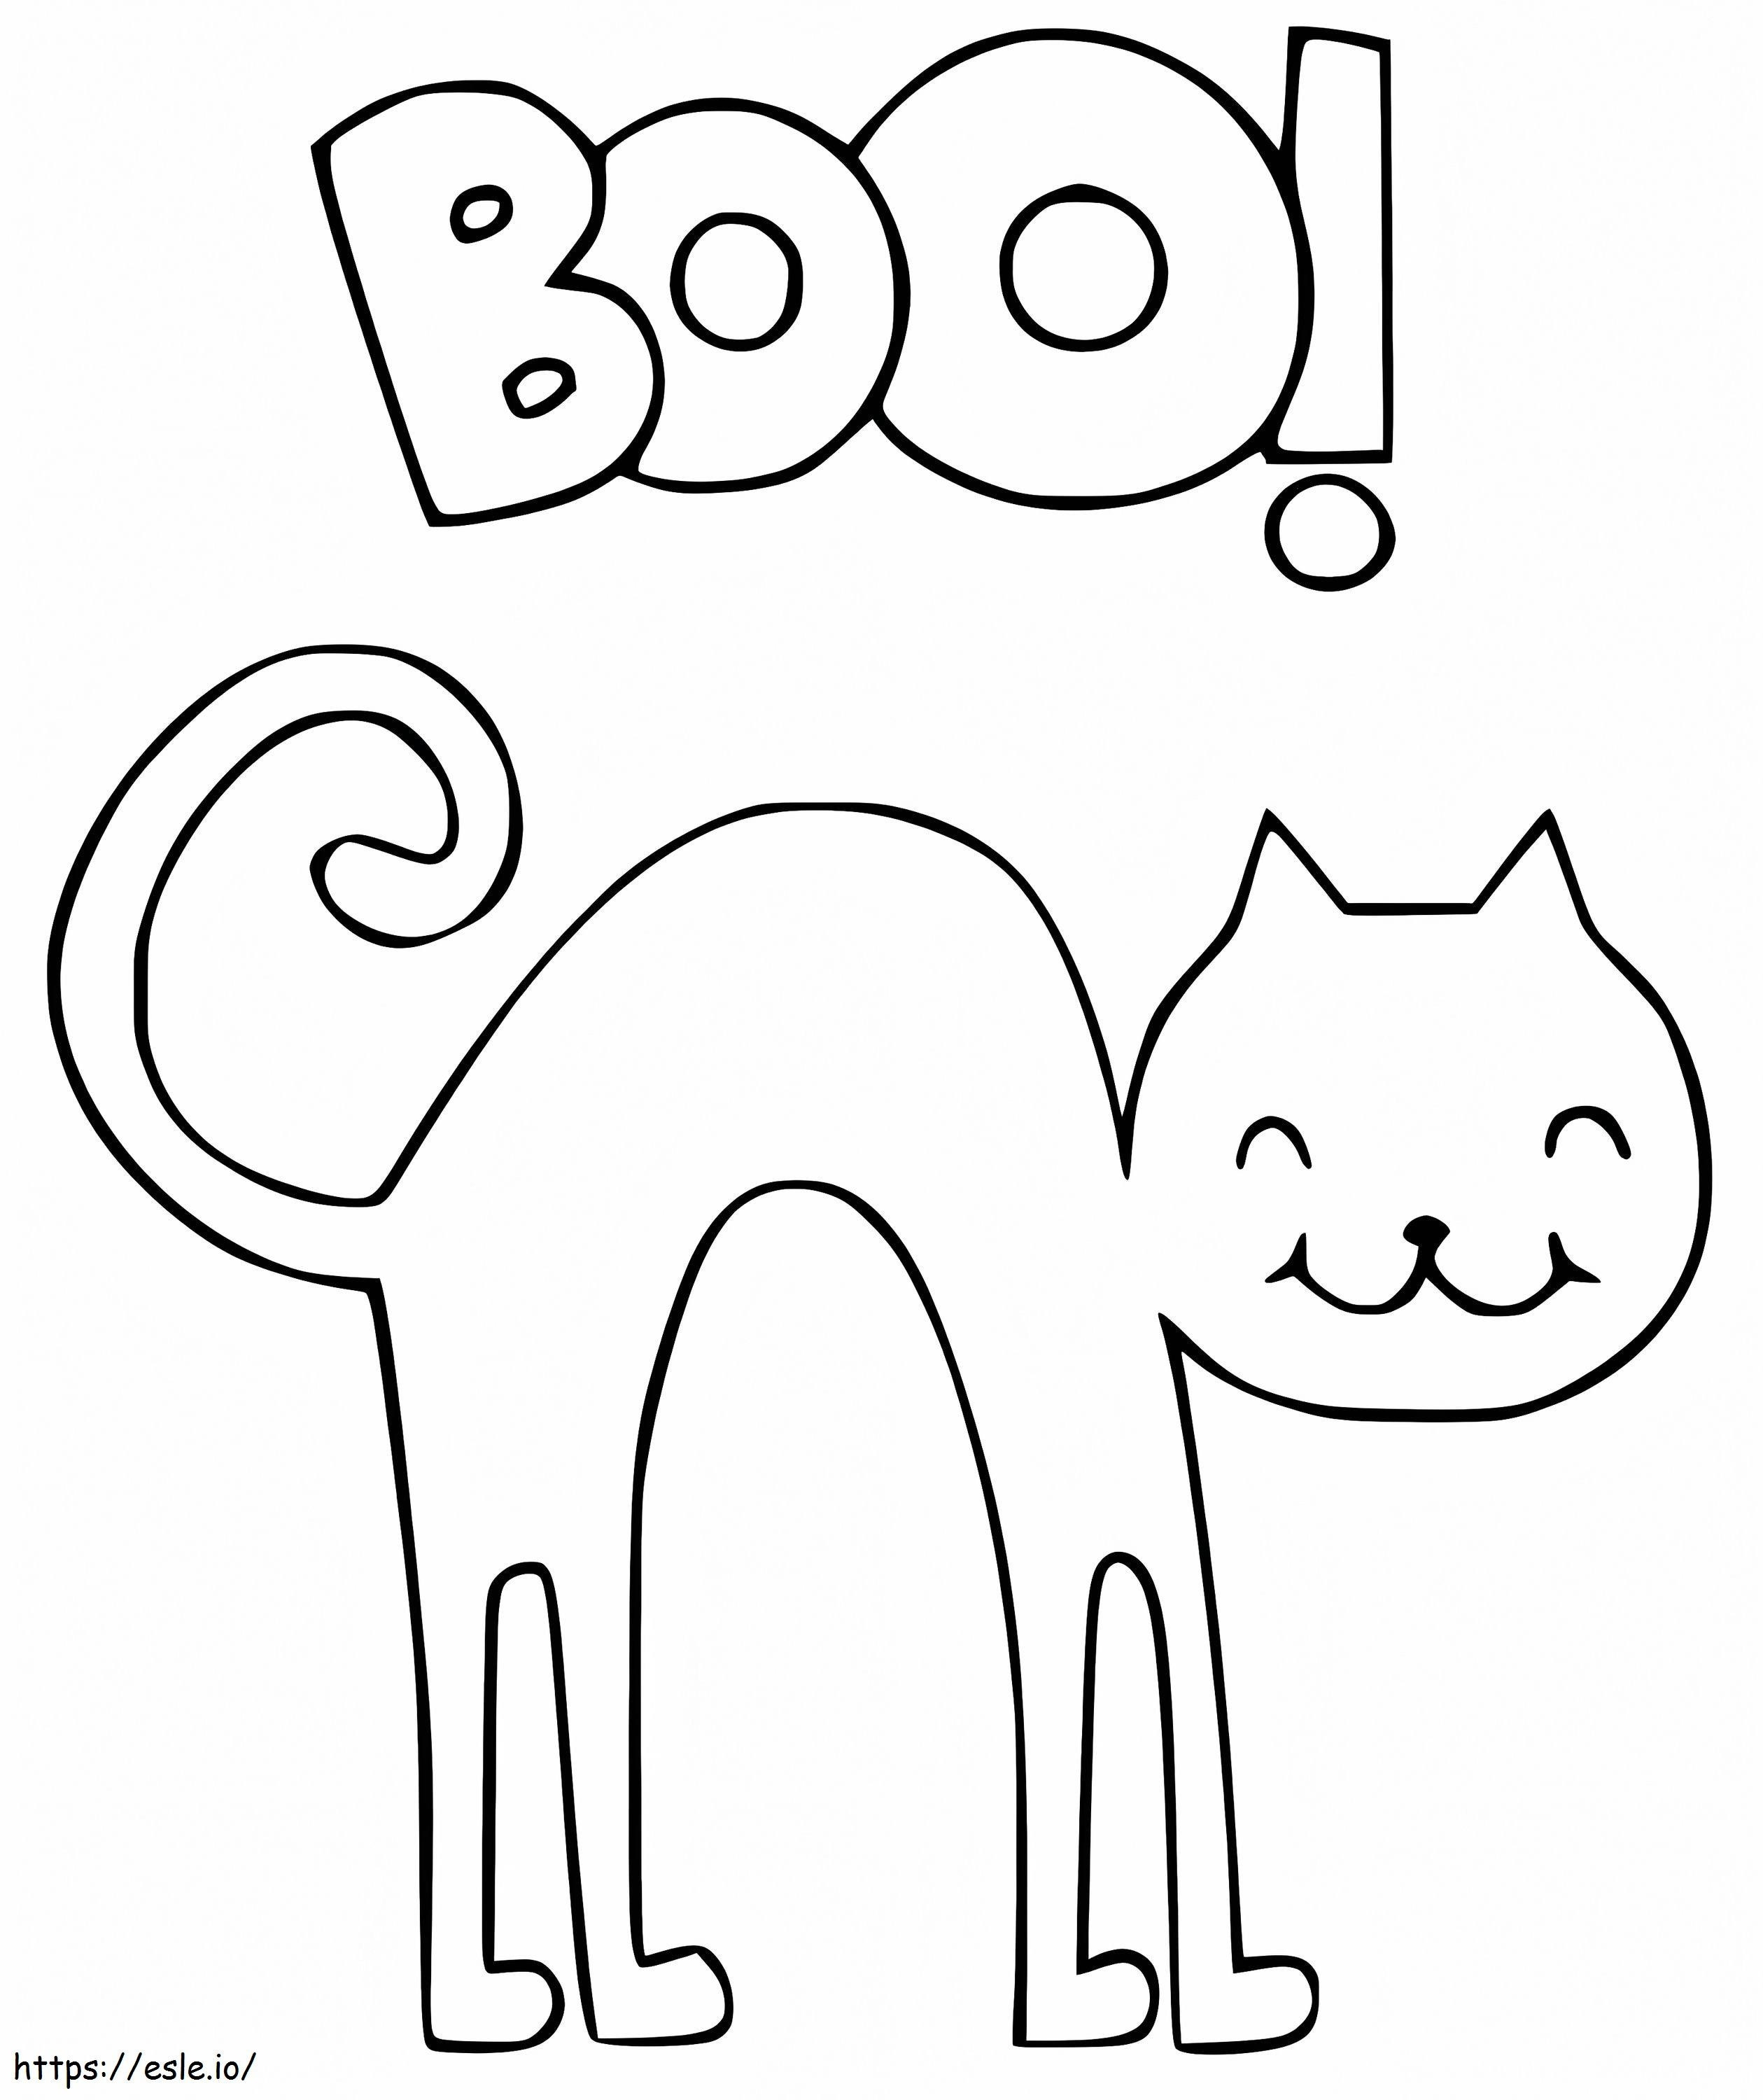 Coloriage Boo de chat d'Halloween à imprimer dessin